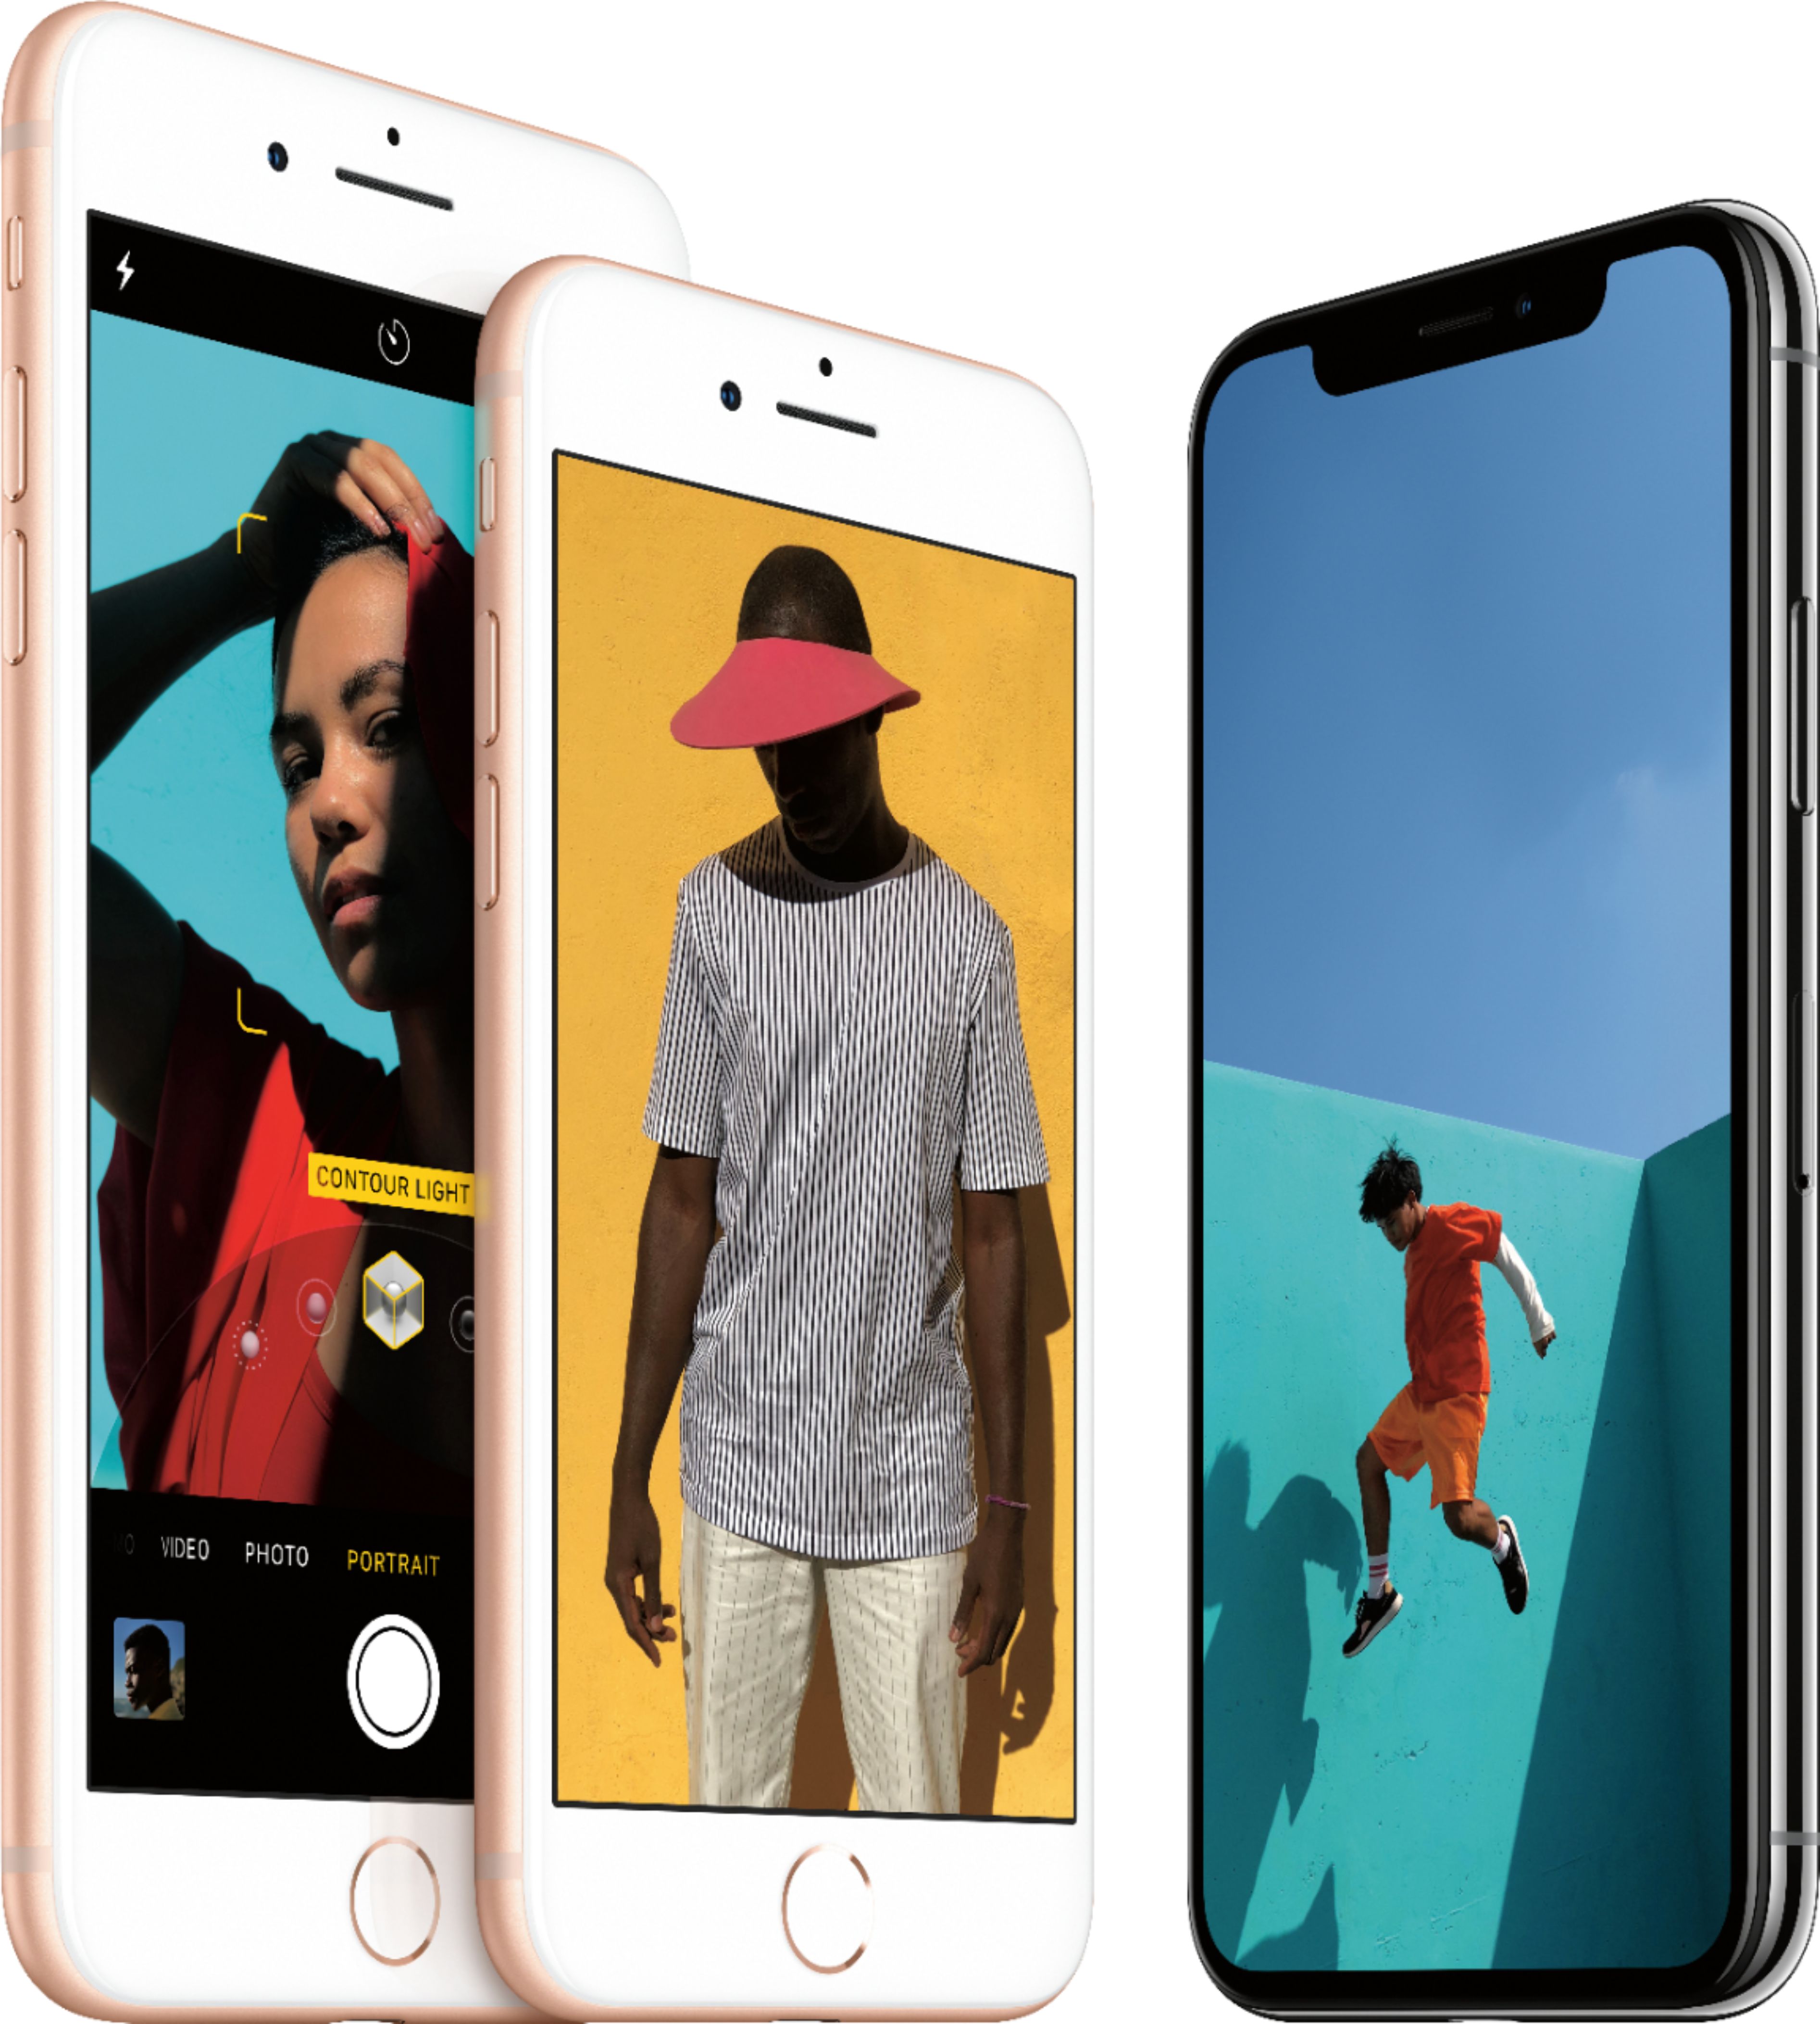 iPhone X Space Gray 64 GB au スマートフォン本体 スマートフォン/携帯電話 家電・スマホ・カメラ 当店限定商品